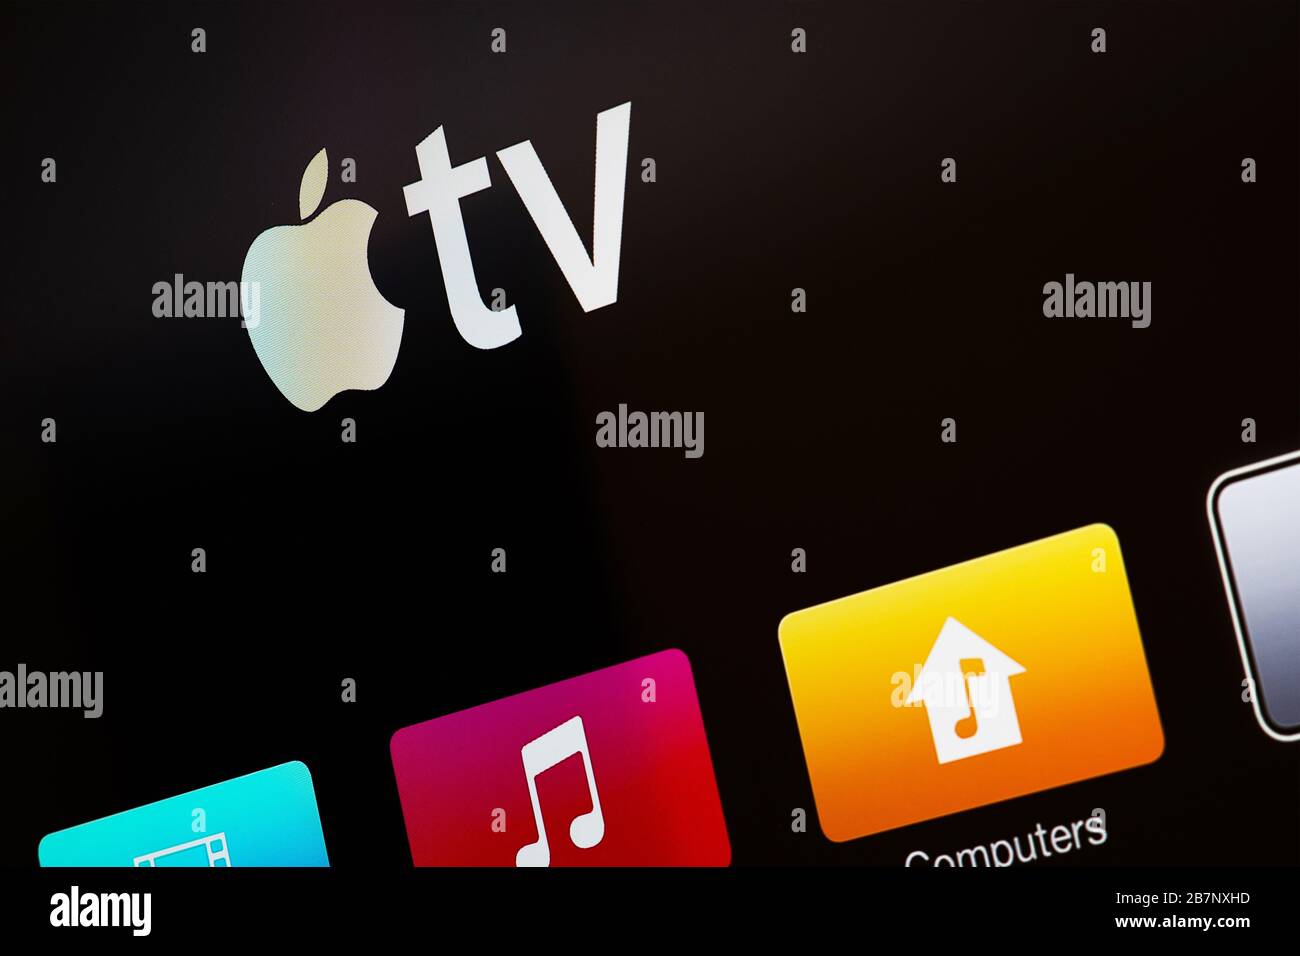 Miami/USA - 17 marzo 2020: Logo Apple TV sullo schermo di Smart TV. Apple TV è hardware e servizio di streaming Foto Stock